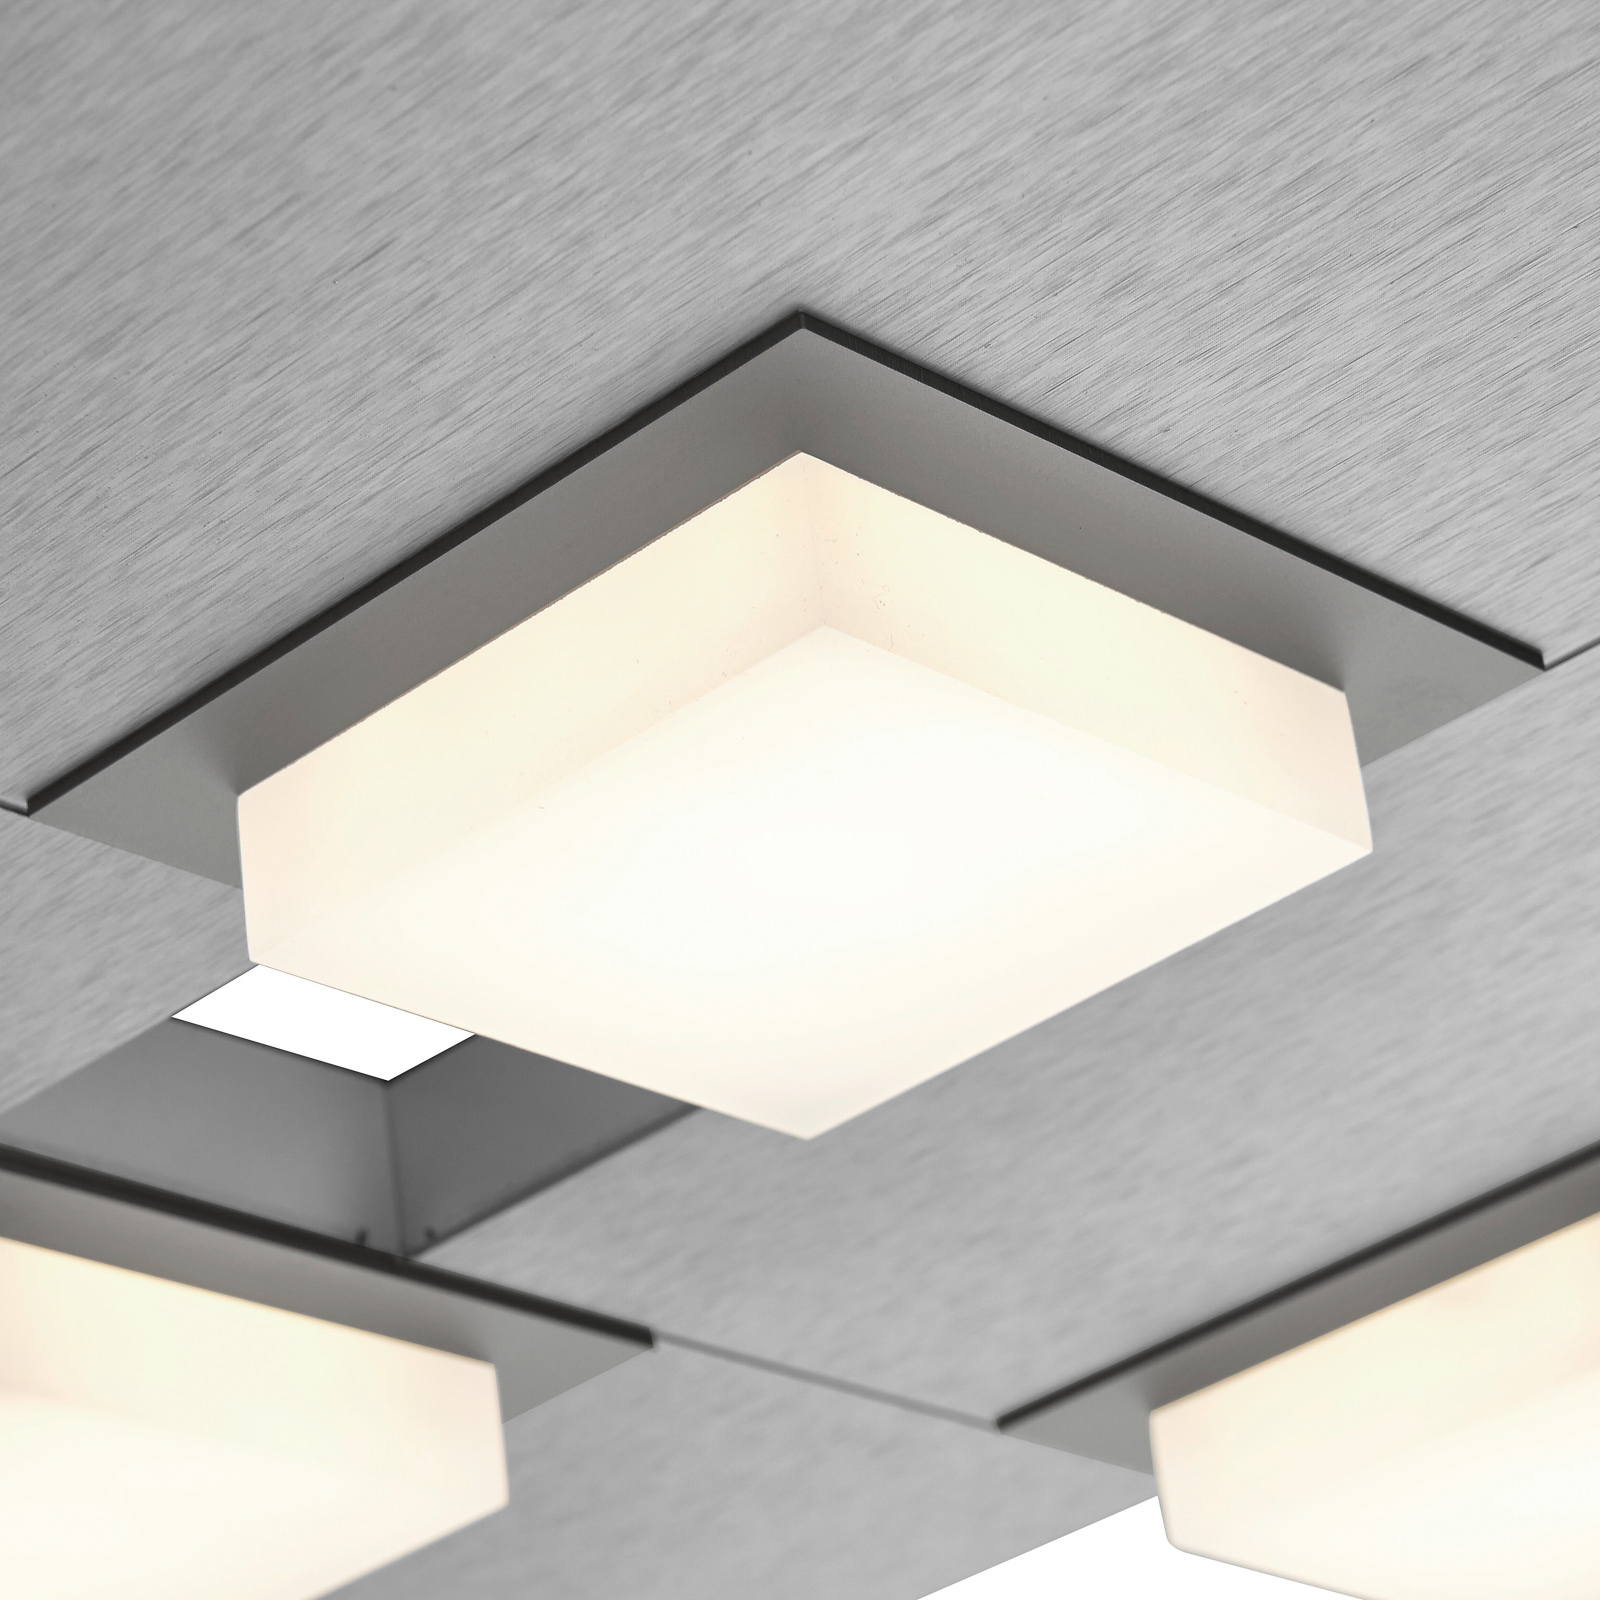 BANKAMP Quadro stropní LED svítidlo 32 W stříbrná